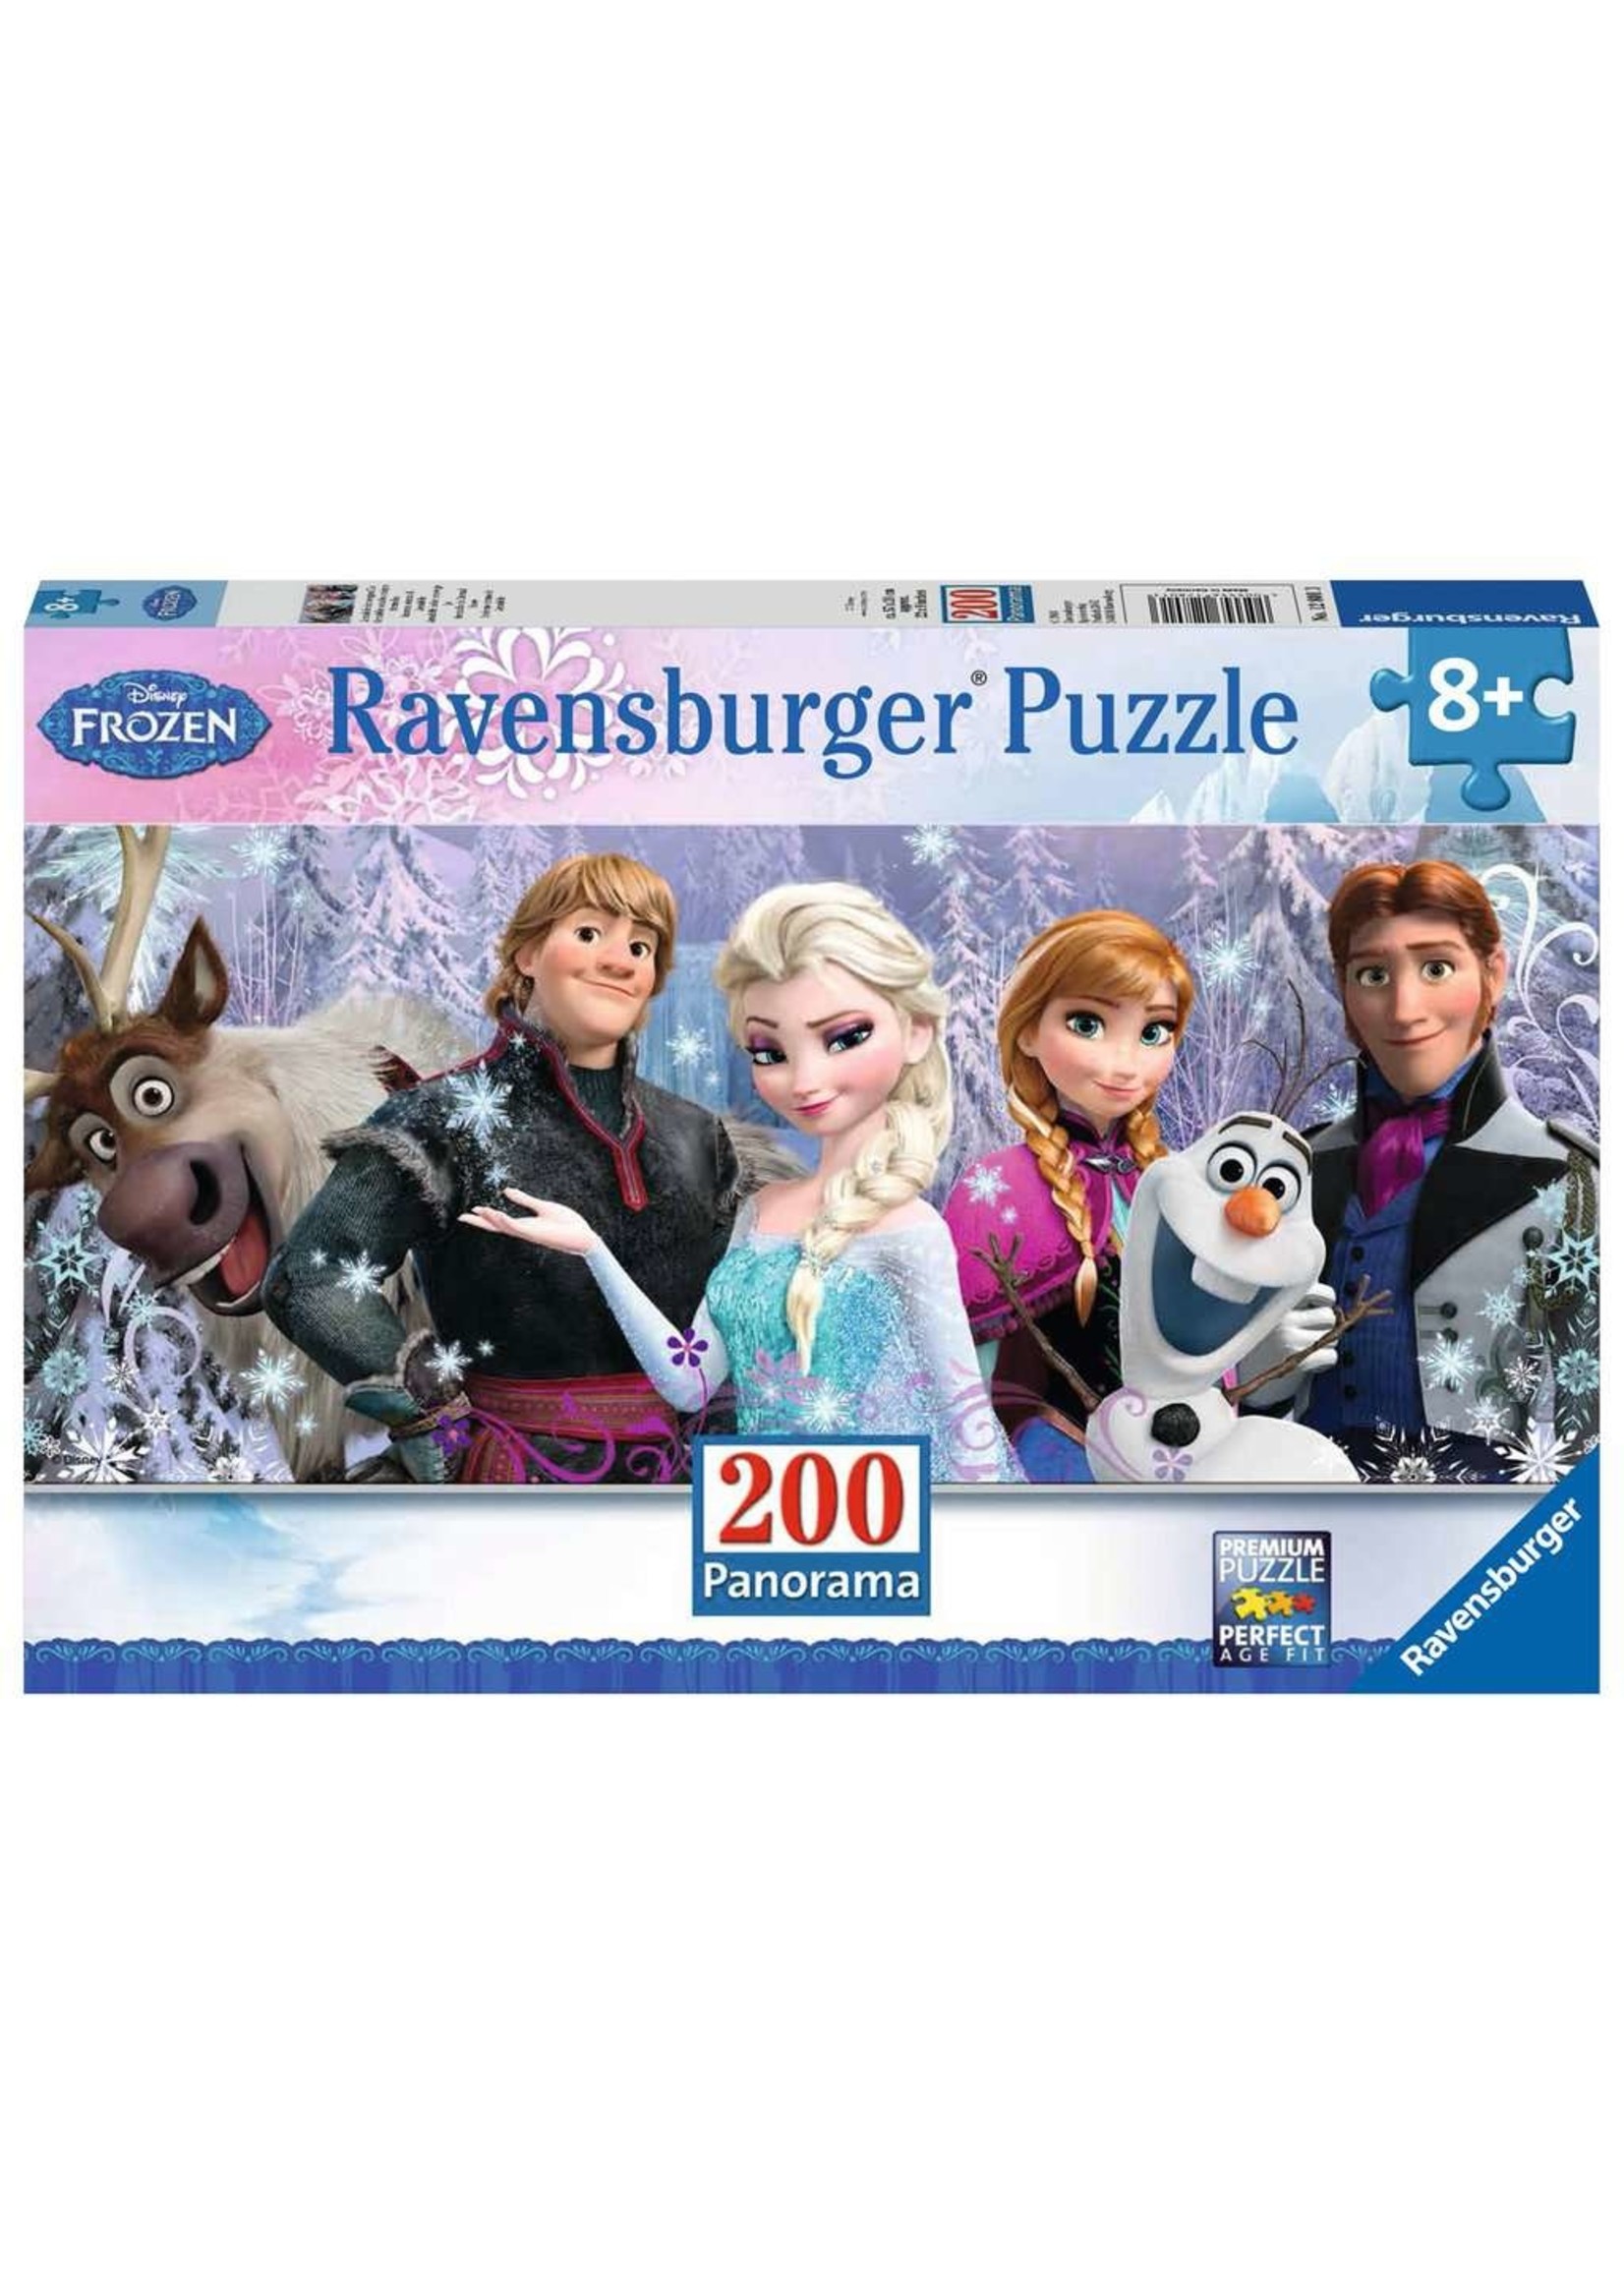 Ravensburger Frozen Friends - 200 Piece Puzzle